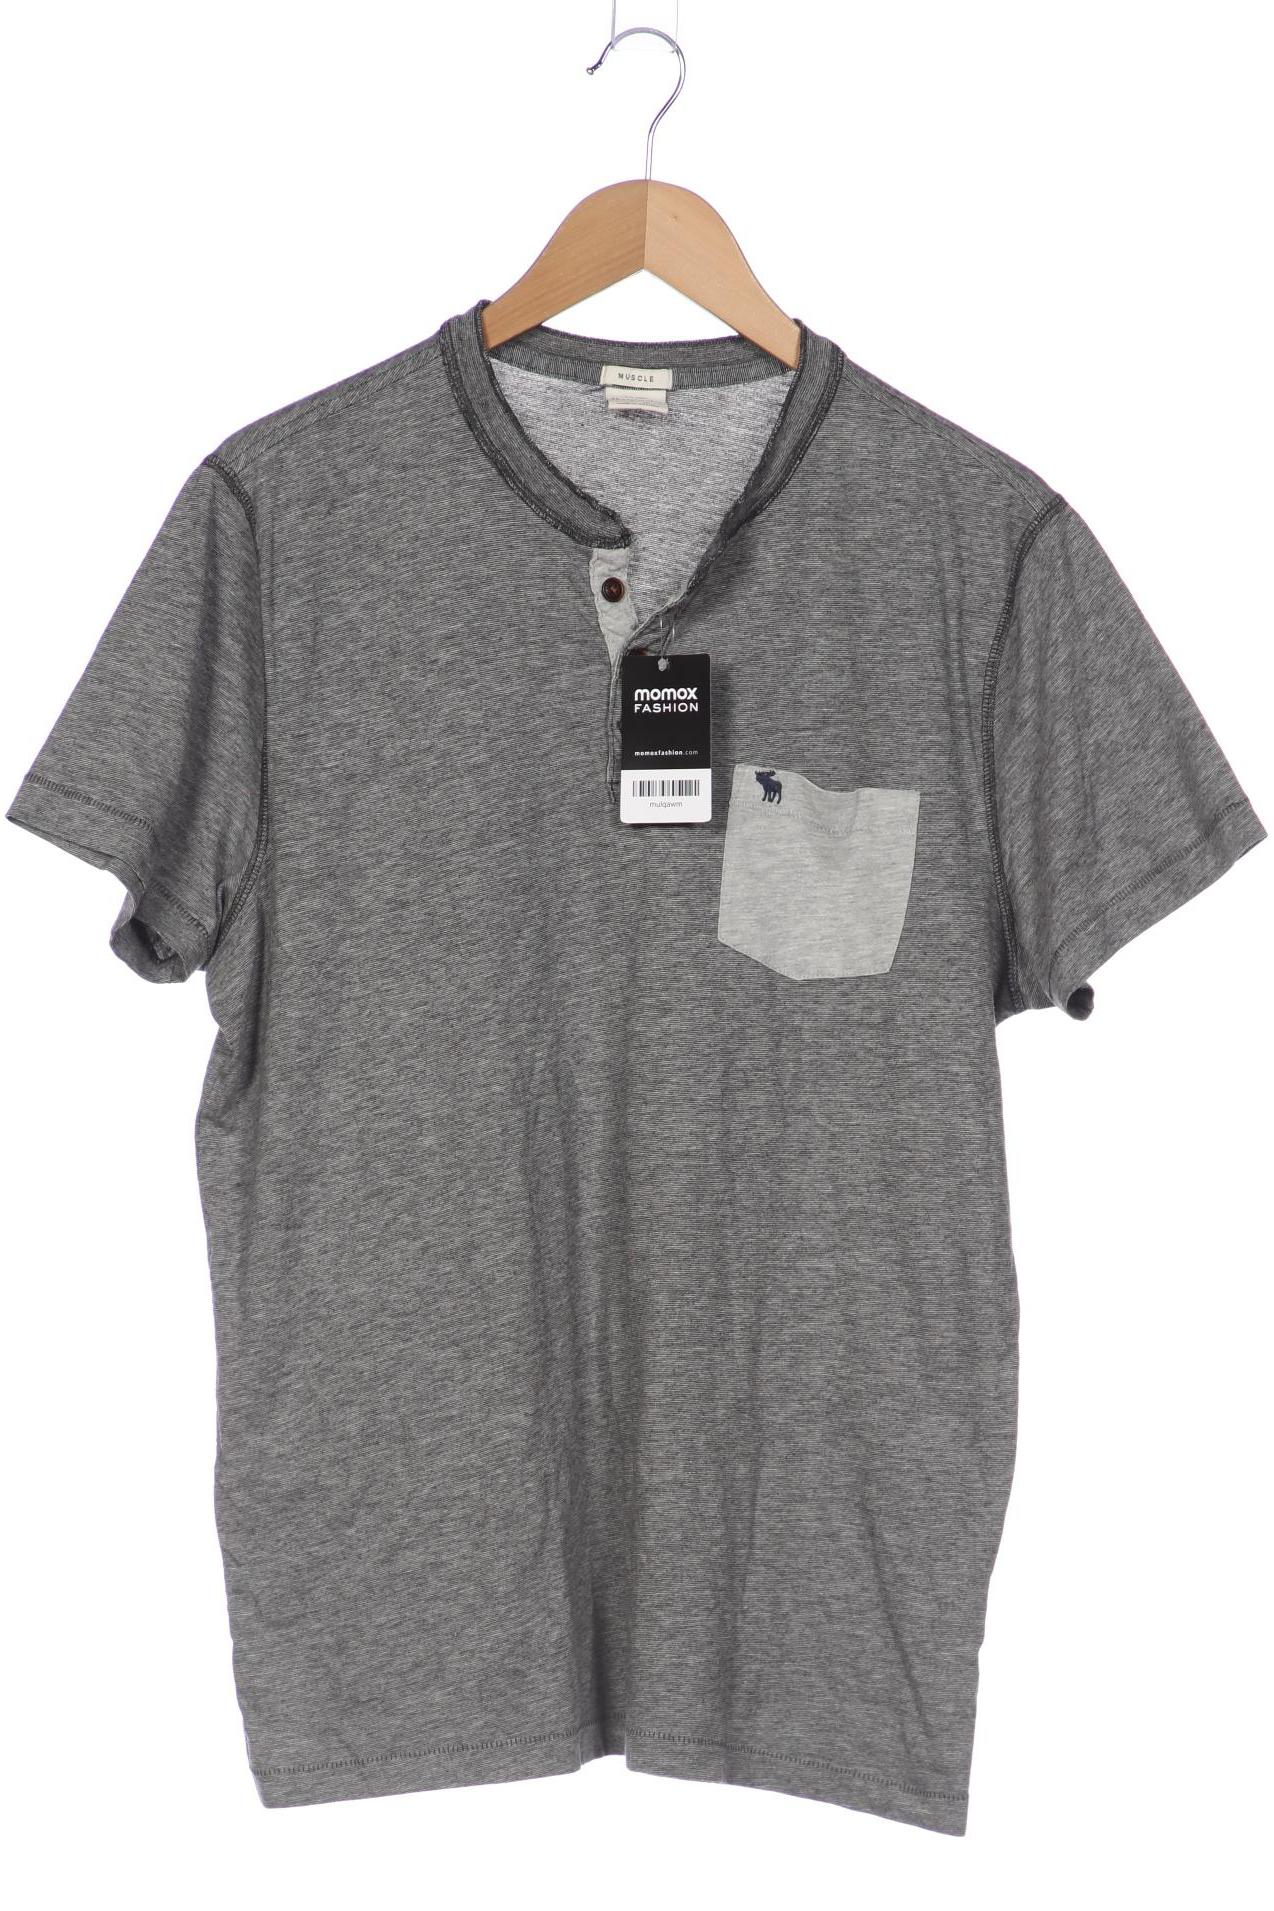 Abercrombie & Fitch Herren T-Shirt, grau von Abercrombie & Fitch